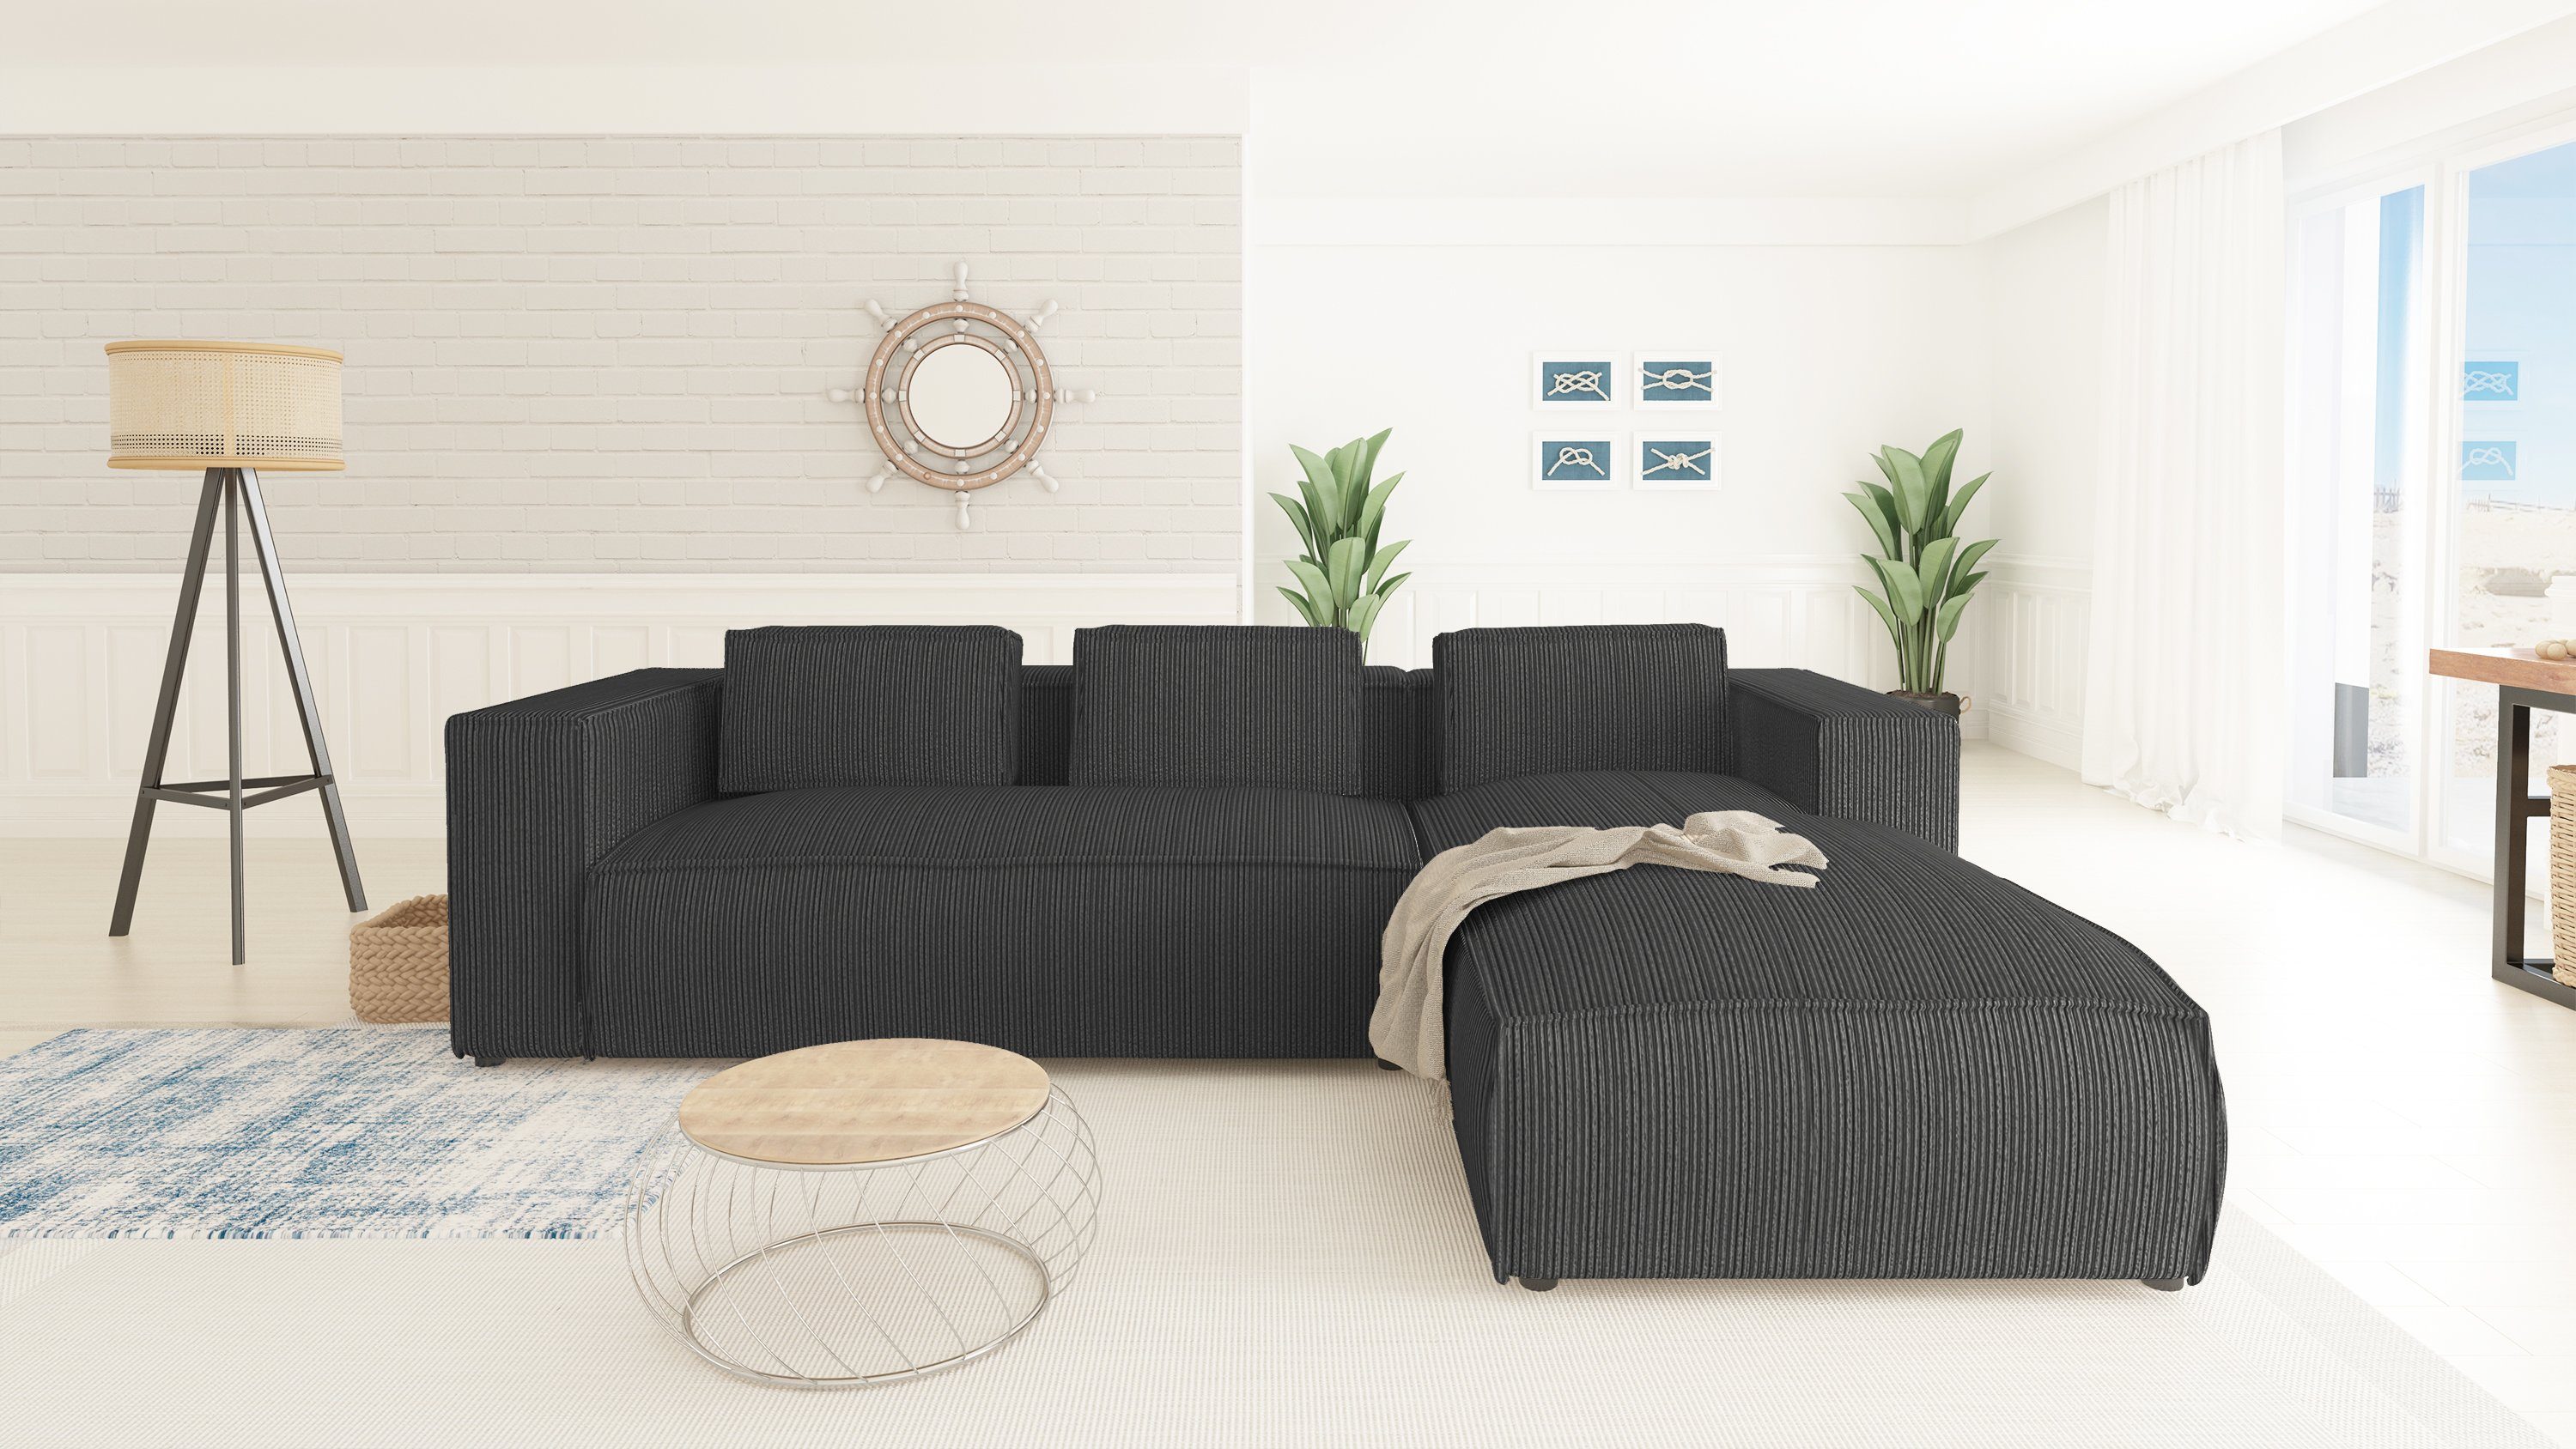 Ecksofa bestellbar in Möbel Wellenfederung Teile, Optik, links rechts Grau oder S-Style mit Moderner Renne, 2 mane